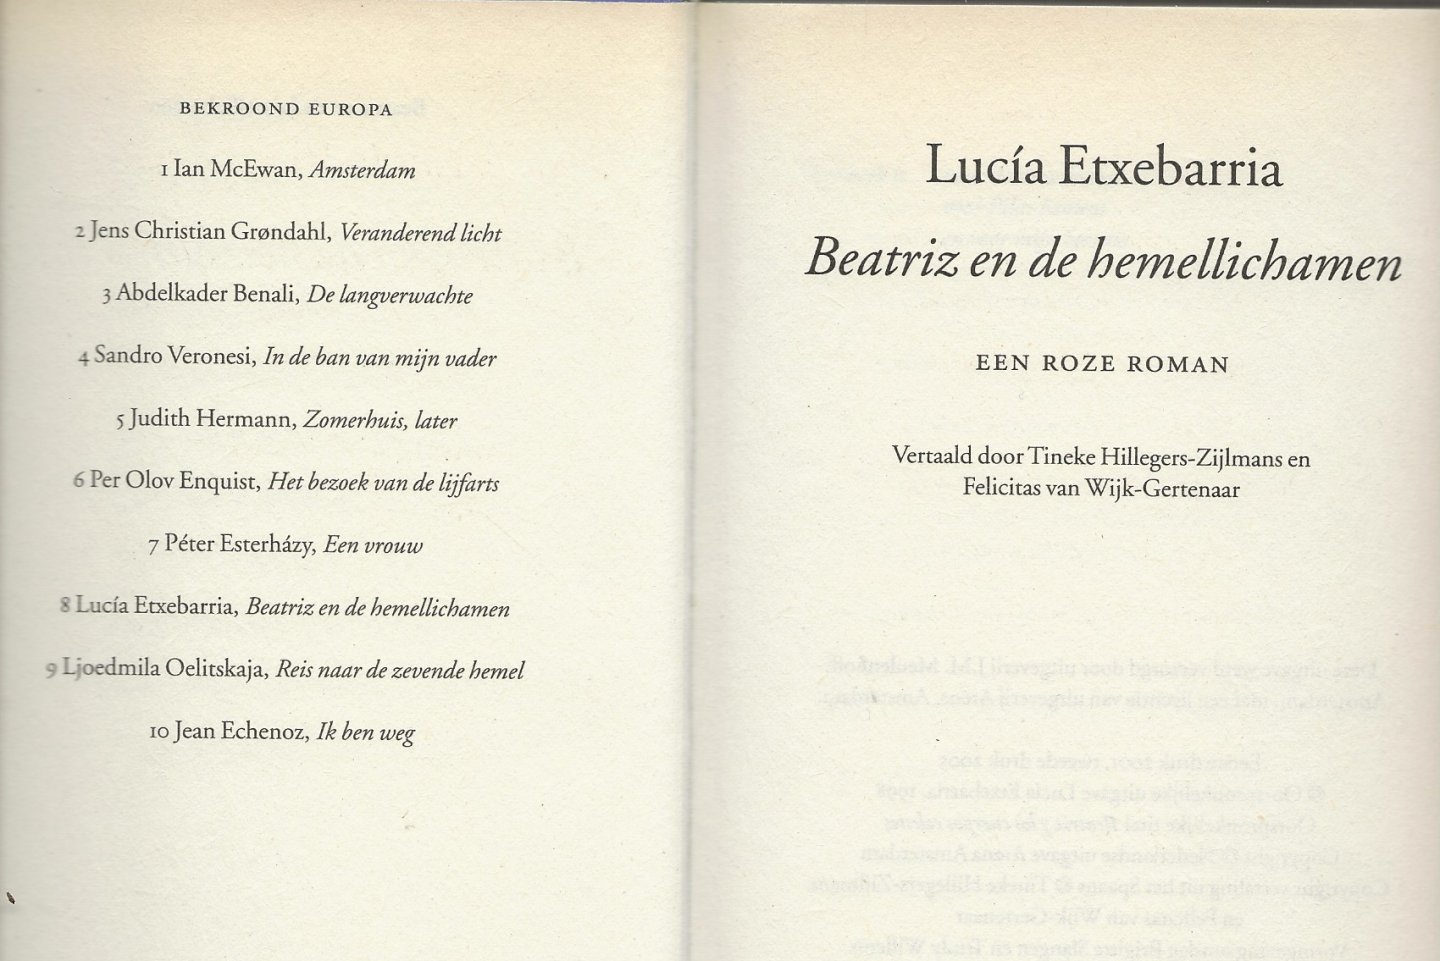 Etxebarria, Lucia . Vertaald door Tineke Hillegers - Zijlmans en Felicitas van Wijk-Certenaar - Beatriz en de Hemellichamen